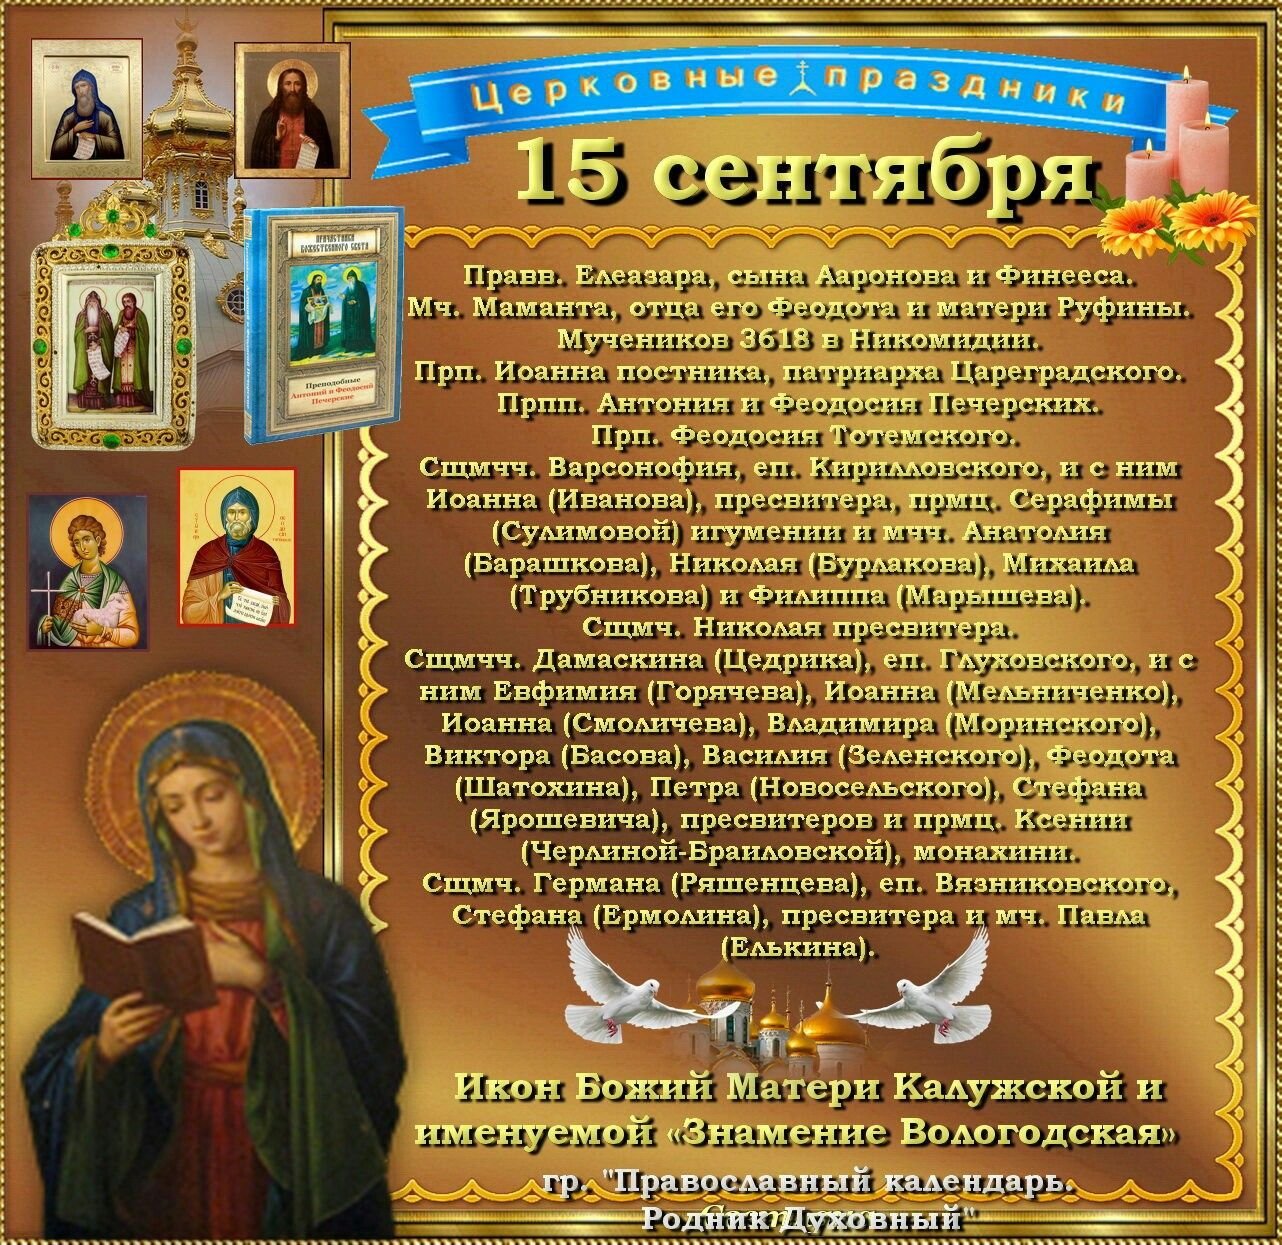 9 апреля какой церковный праздник. 15 Сентября православный календарь. Православные праздники в сентябре. 15 Сентября праздник православный. Православный календарь на сентябрь.